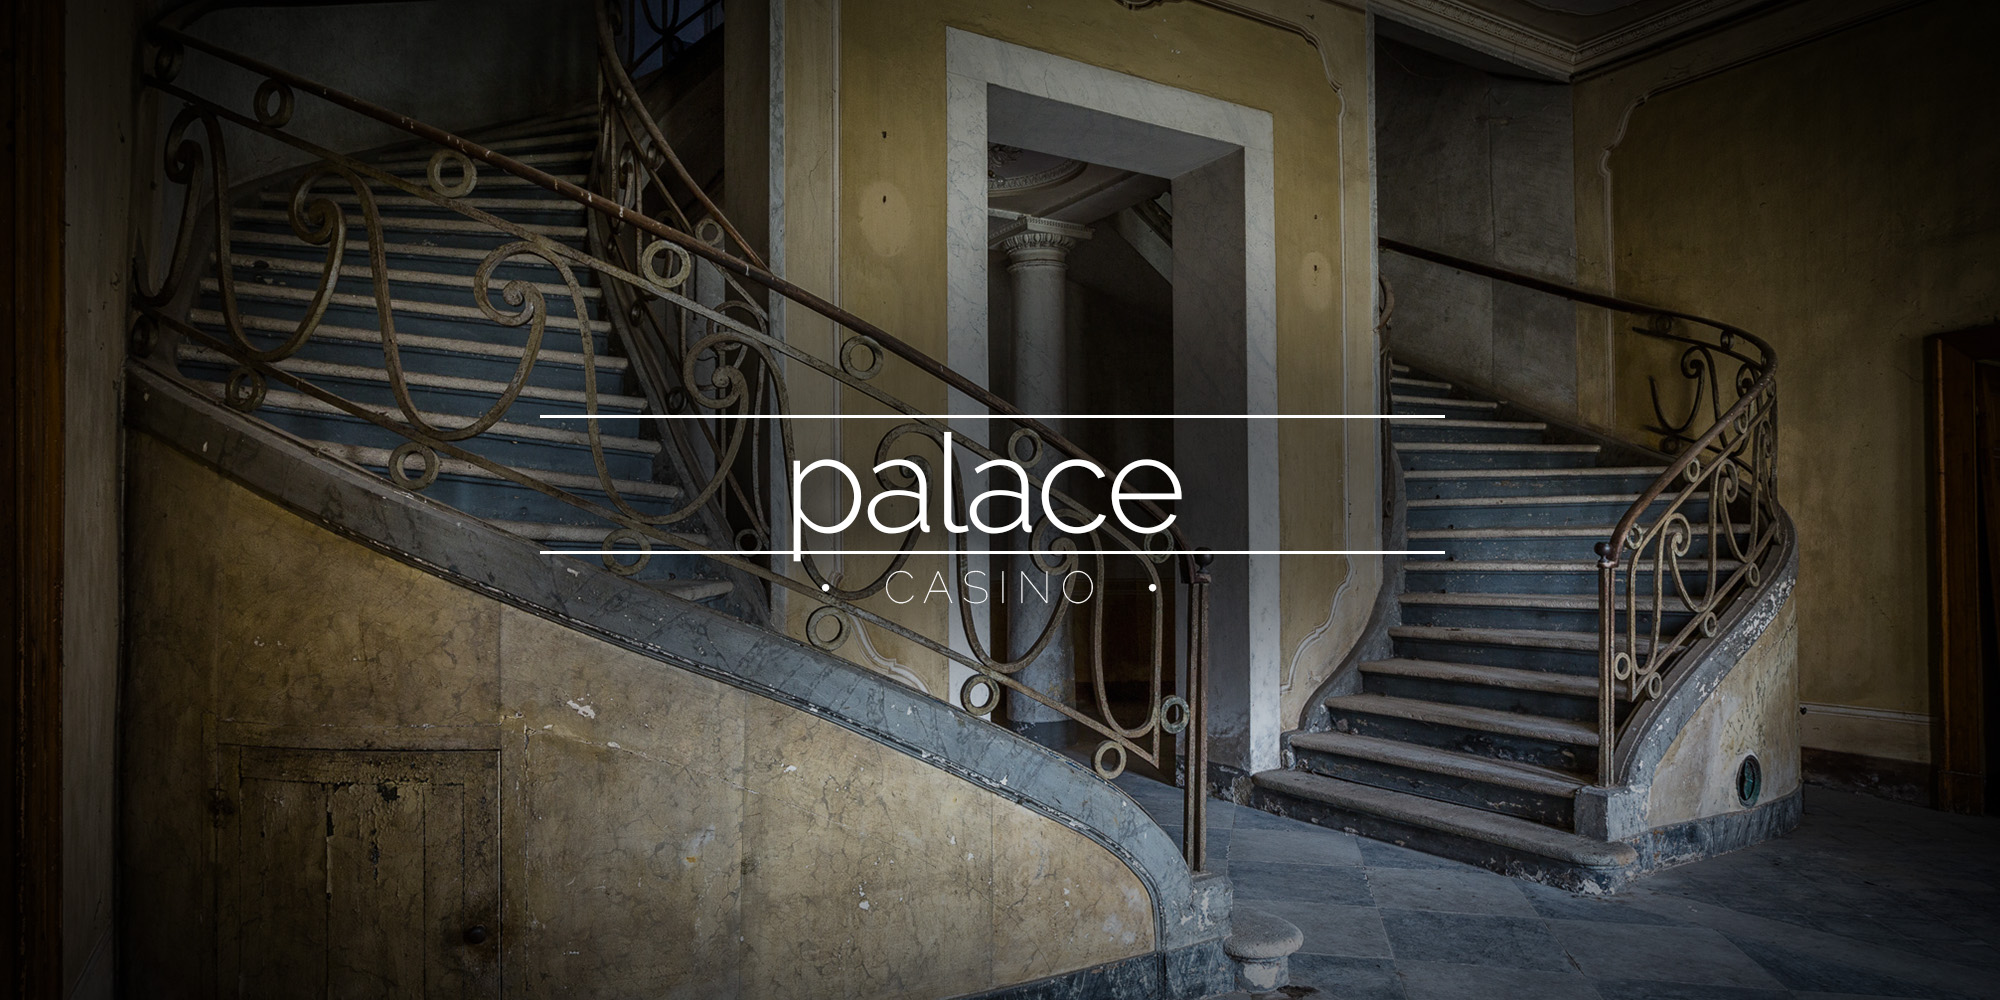 Palace Casino - Stunning Abandoned House, Italy